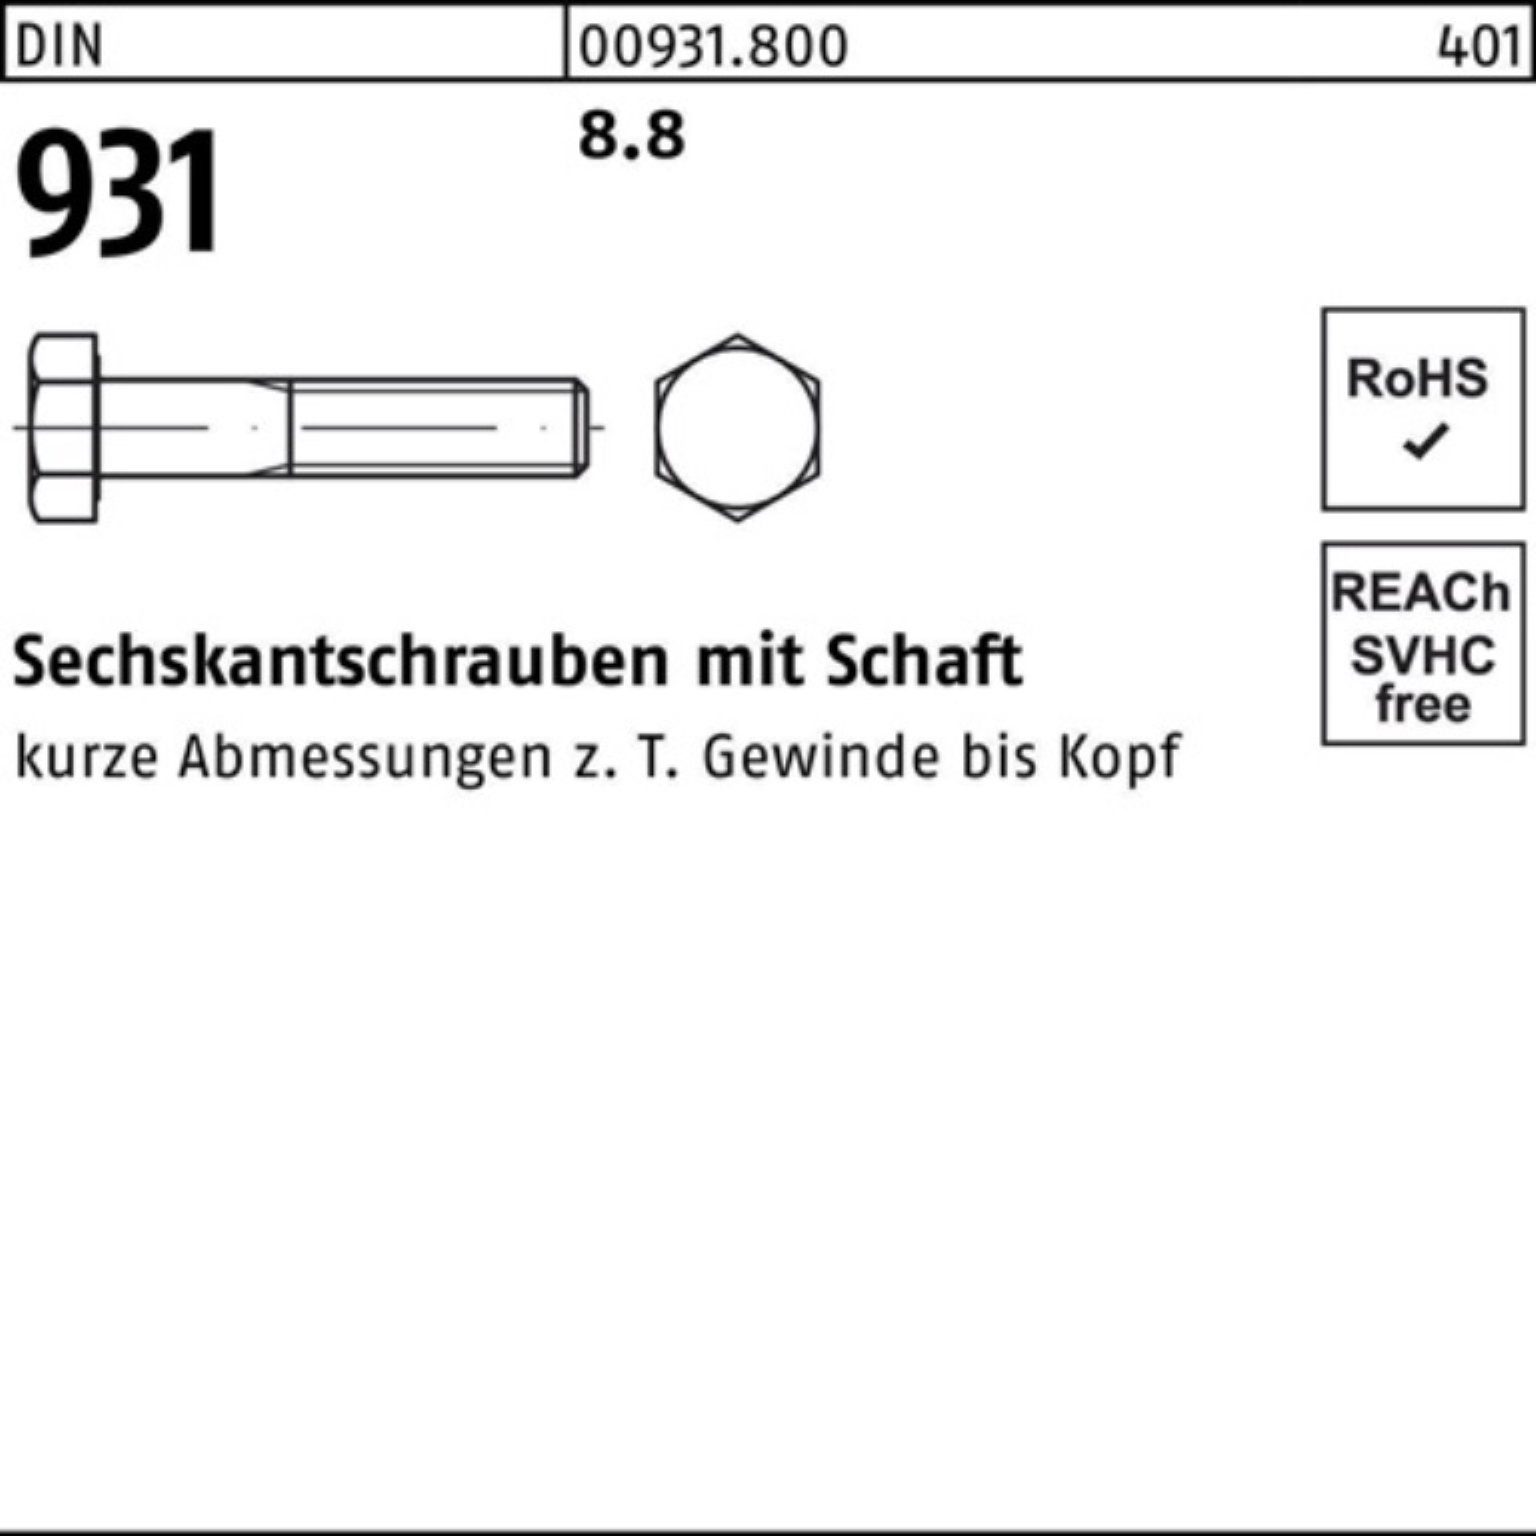 Stück Pack DIN 200 Sechskantschraube DIN M7x Reyher 60 Schaft 200er 931 Sechskantschraube 8.8